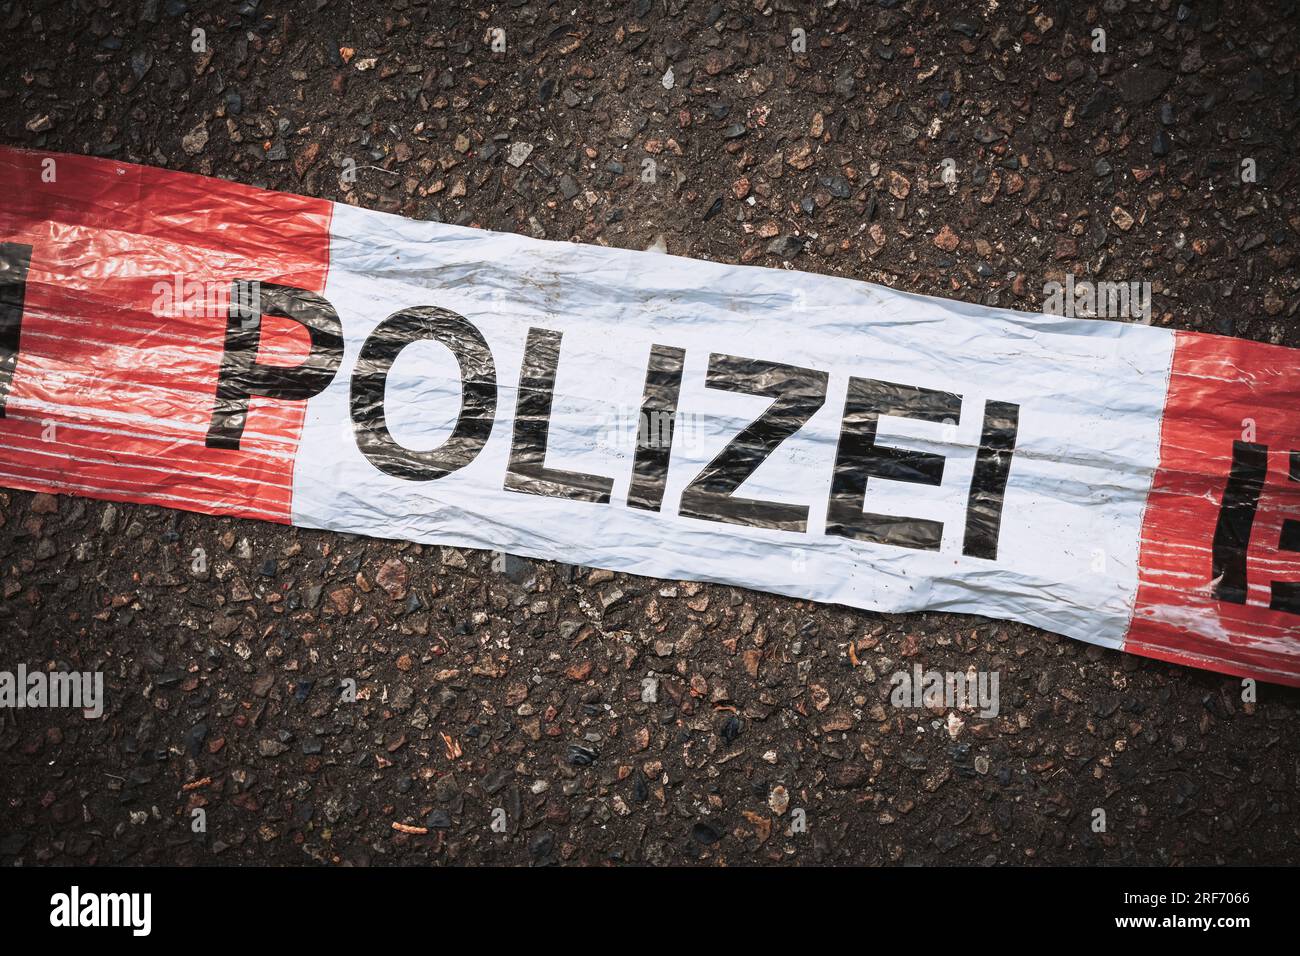 Polizei-Absperrband auf Straße Foto Stock